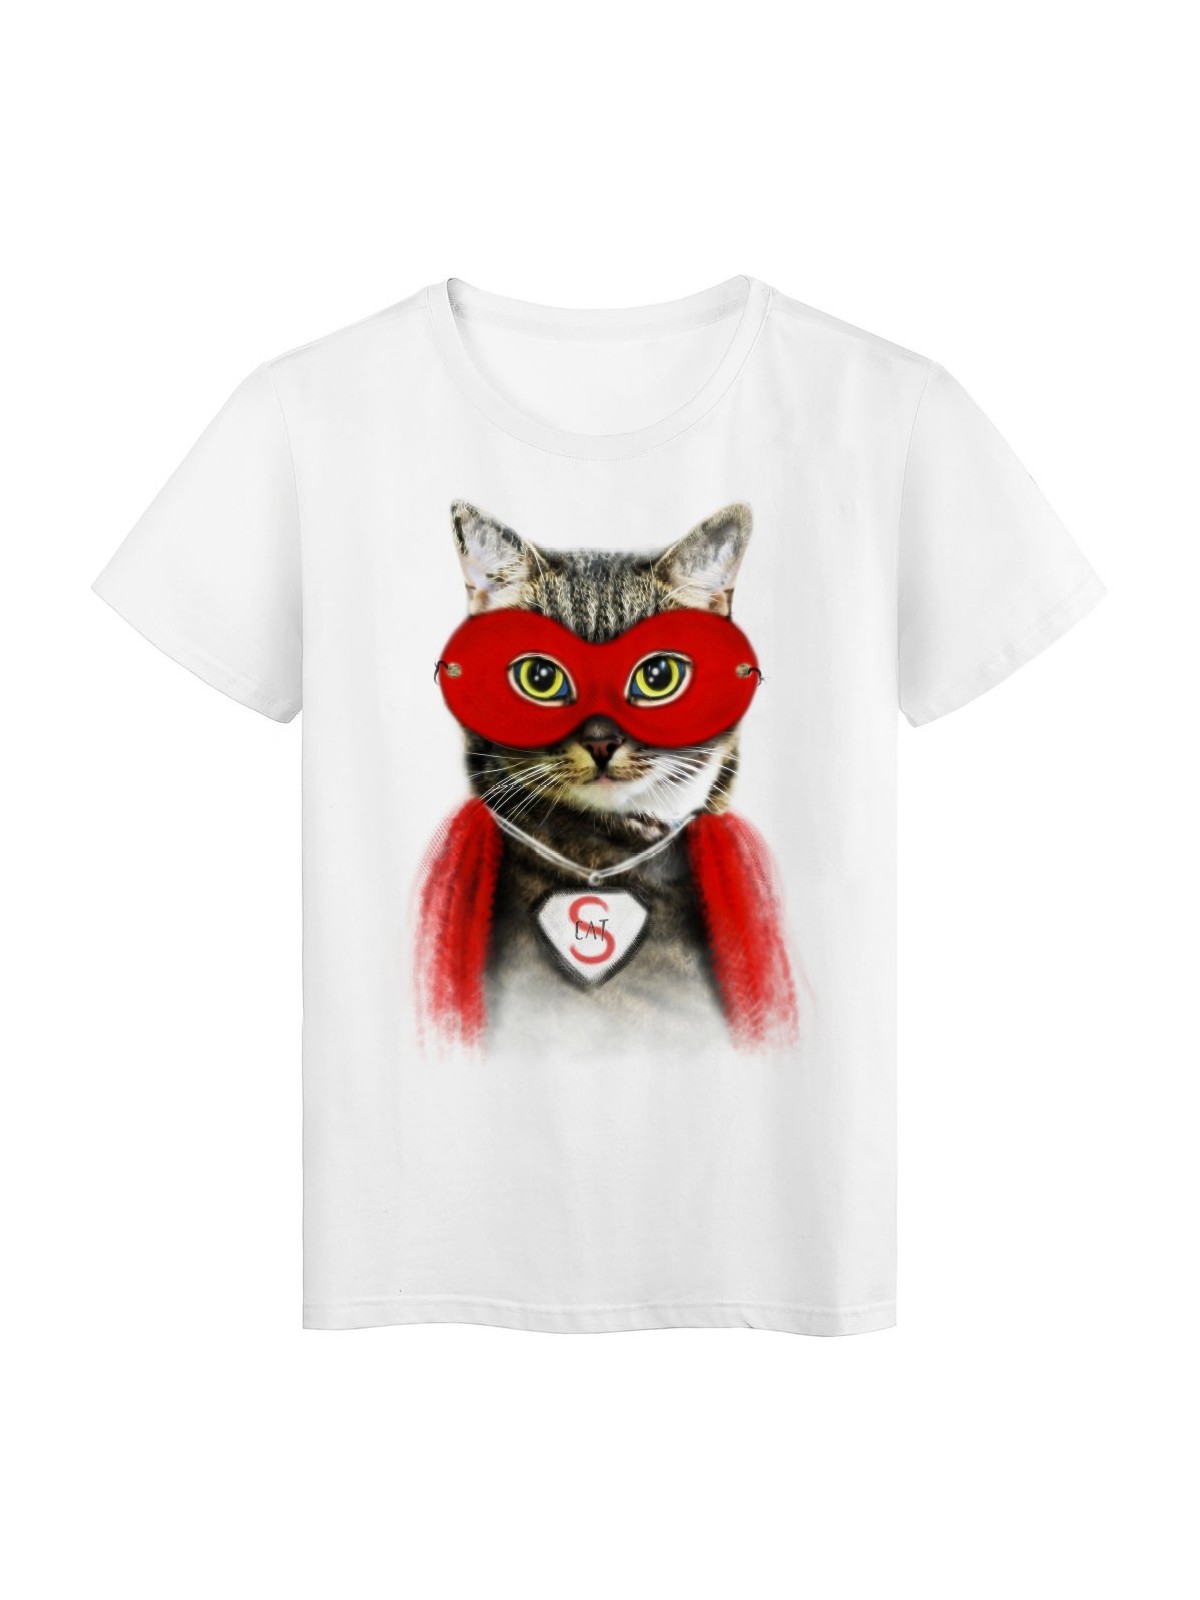 T-Shirt blanc Super cat cape et masque rouge Chat design rÃ©f Tee shirt 2143